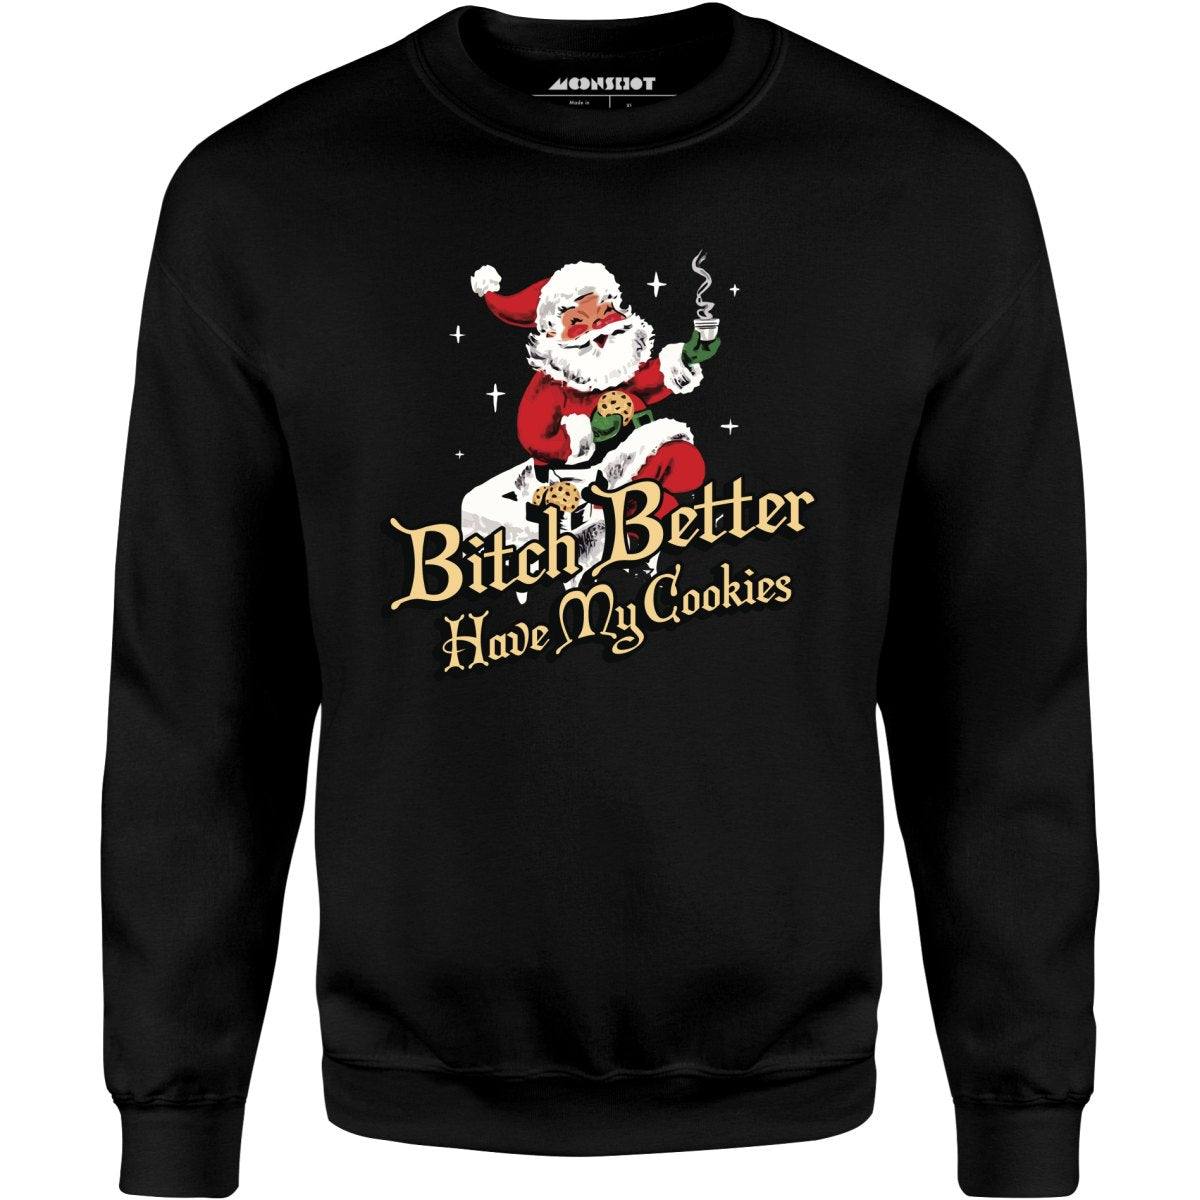 Bitch Better Have My Cookies - Unisex Sweatshirt